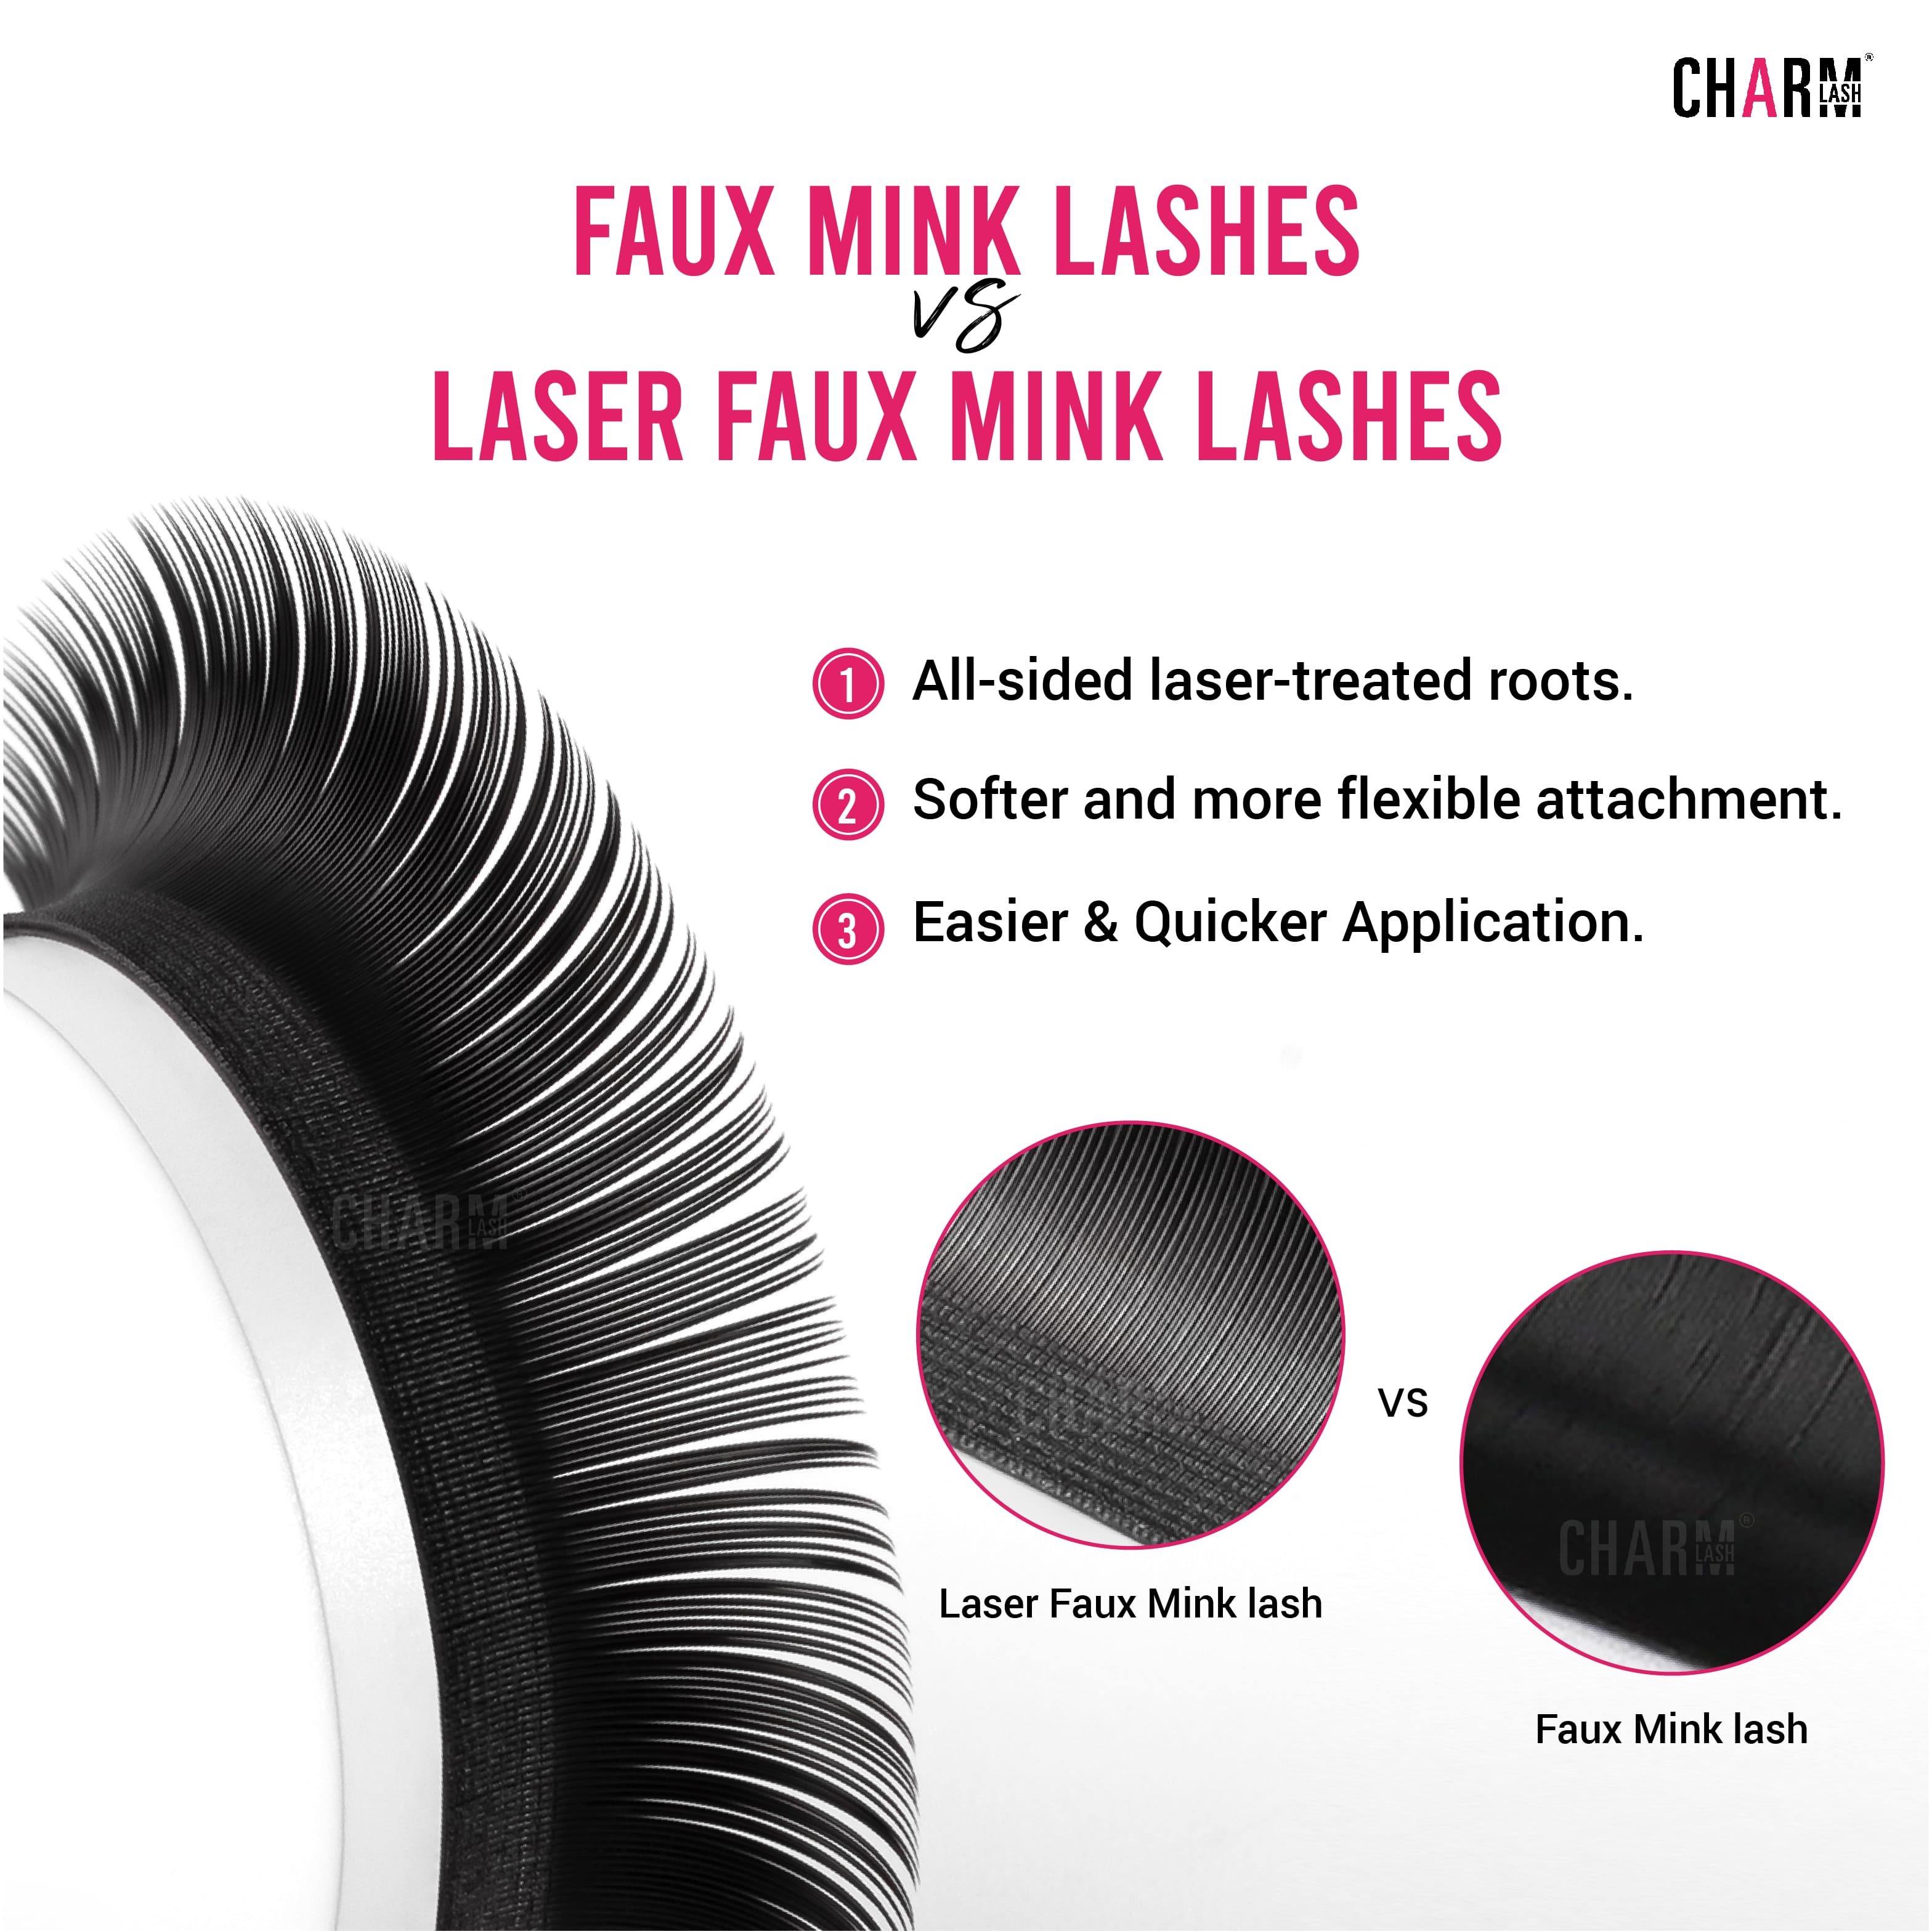 faux mink lashes vs laser faux mink lashes